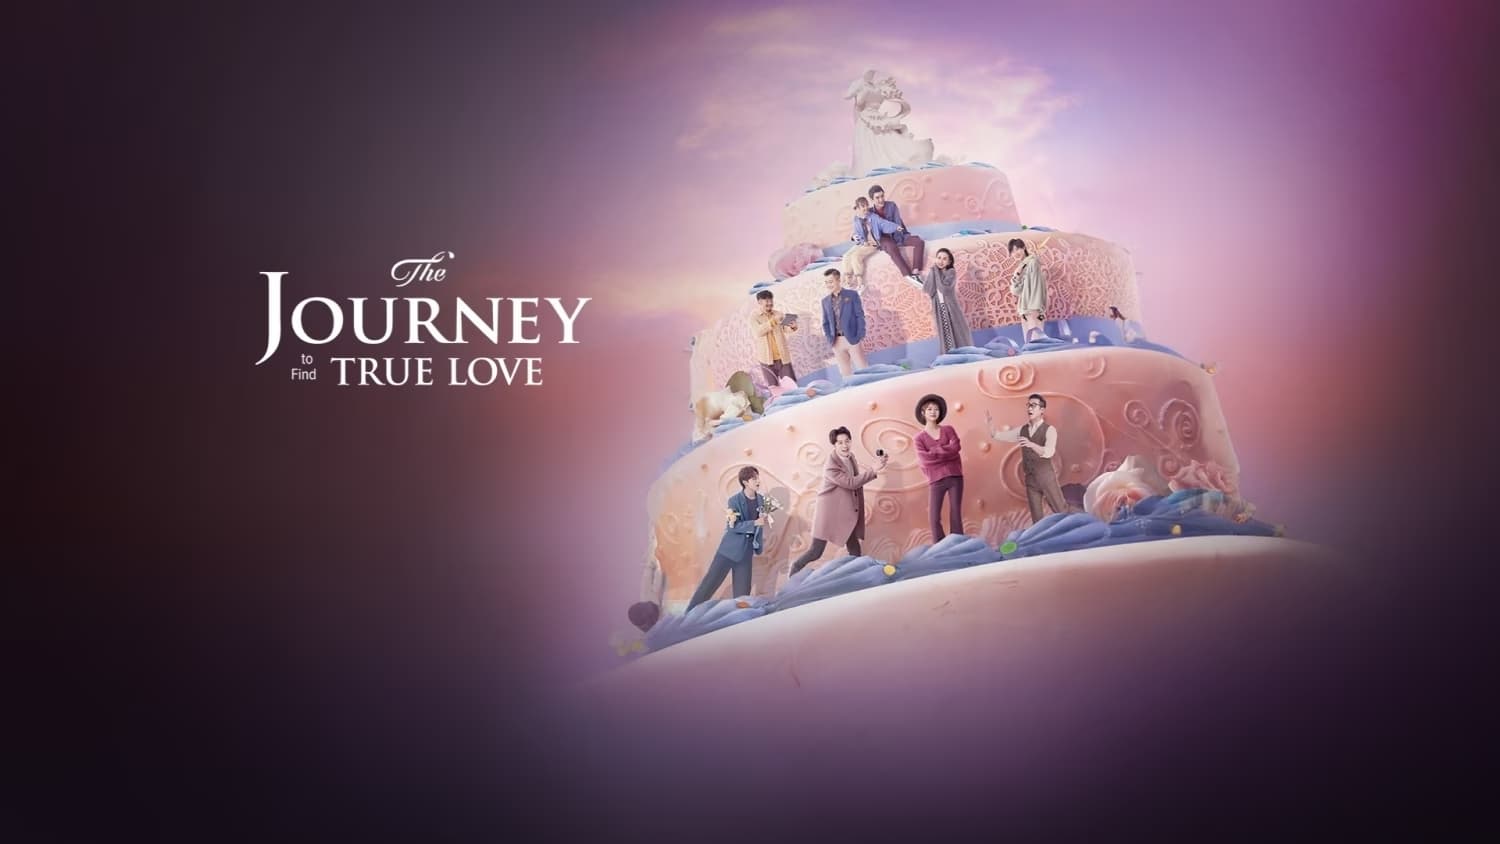 Xin Hãy Yêu Đương Với Kẻ Hài Hước Như Tôi - The Journey to Find True Love